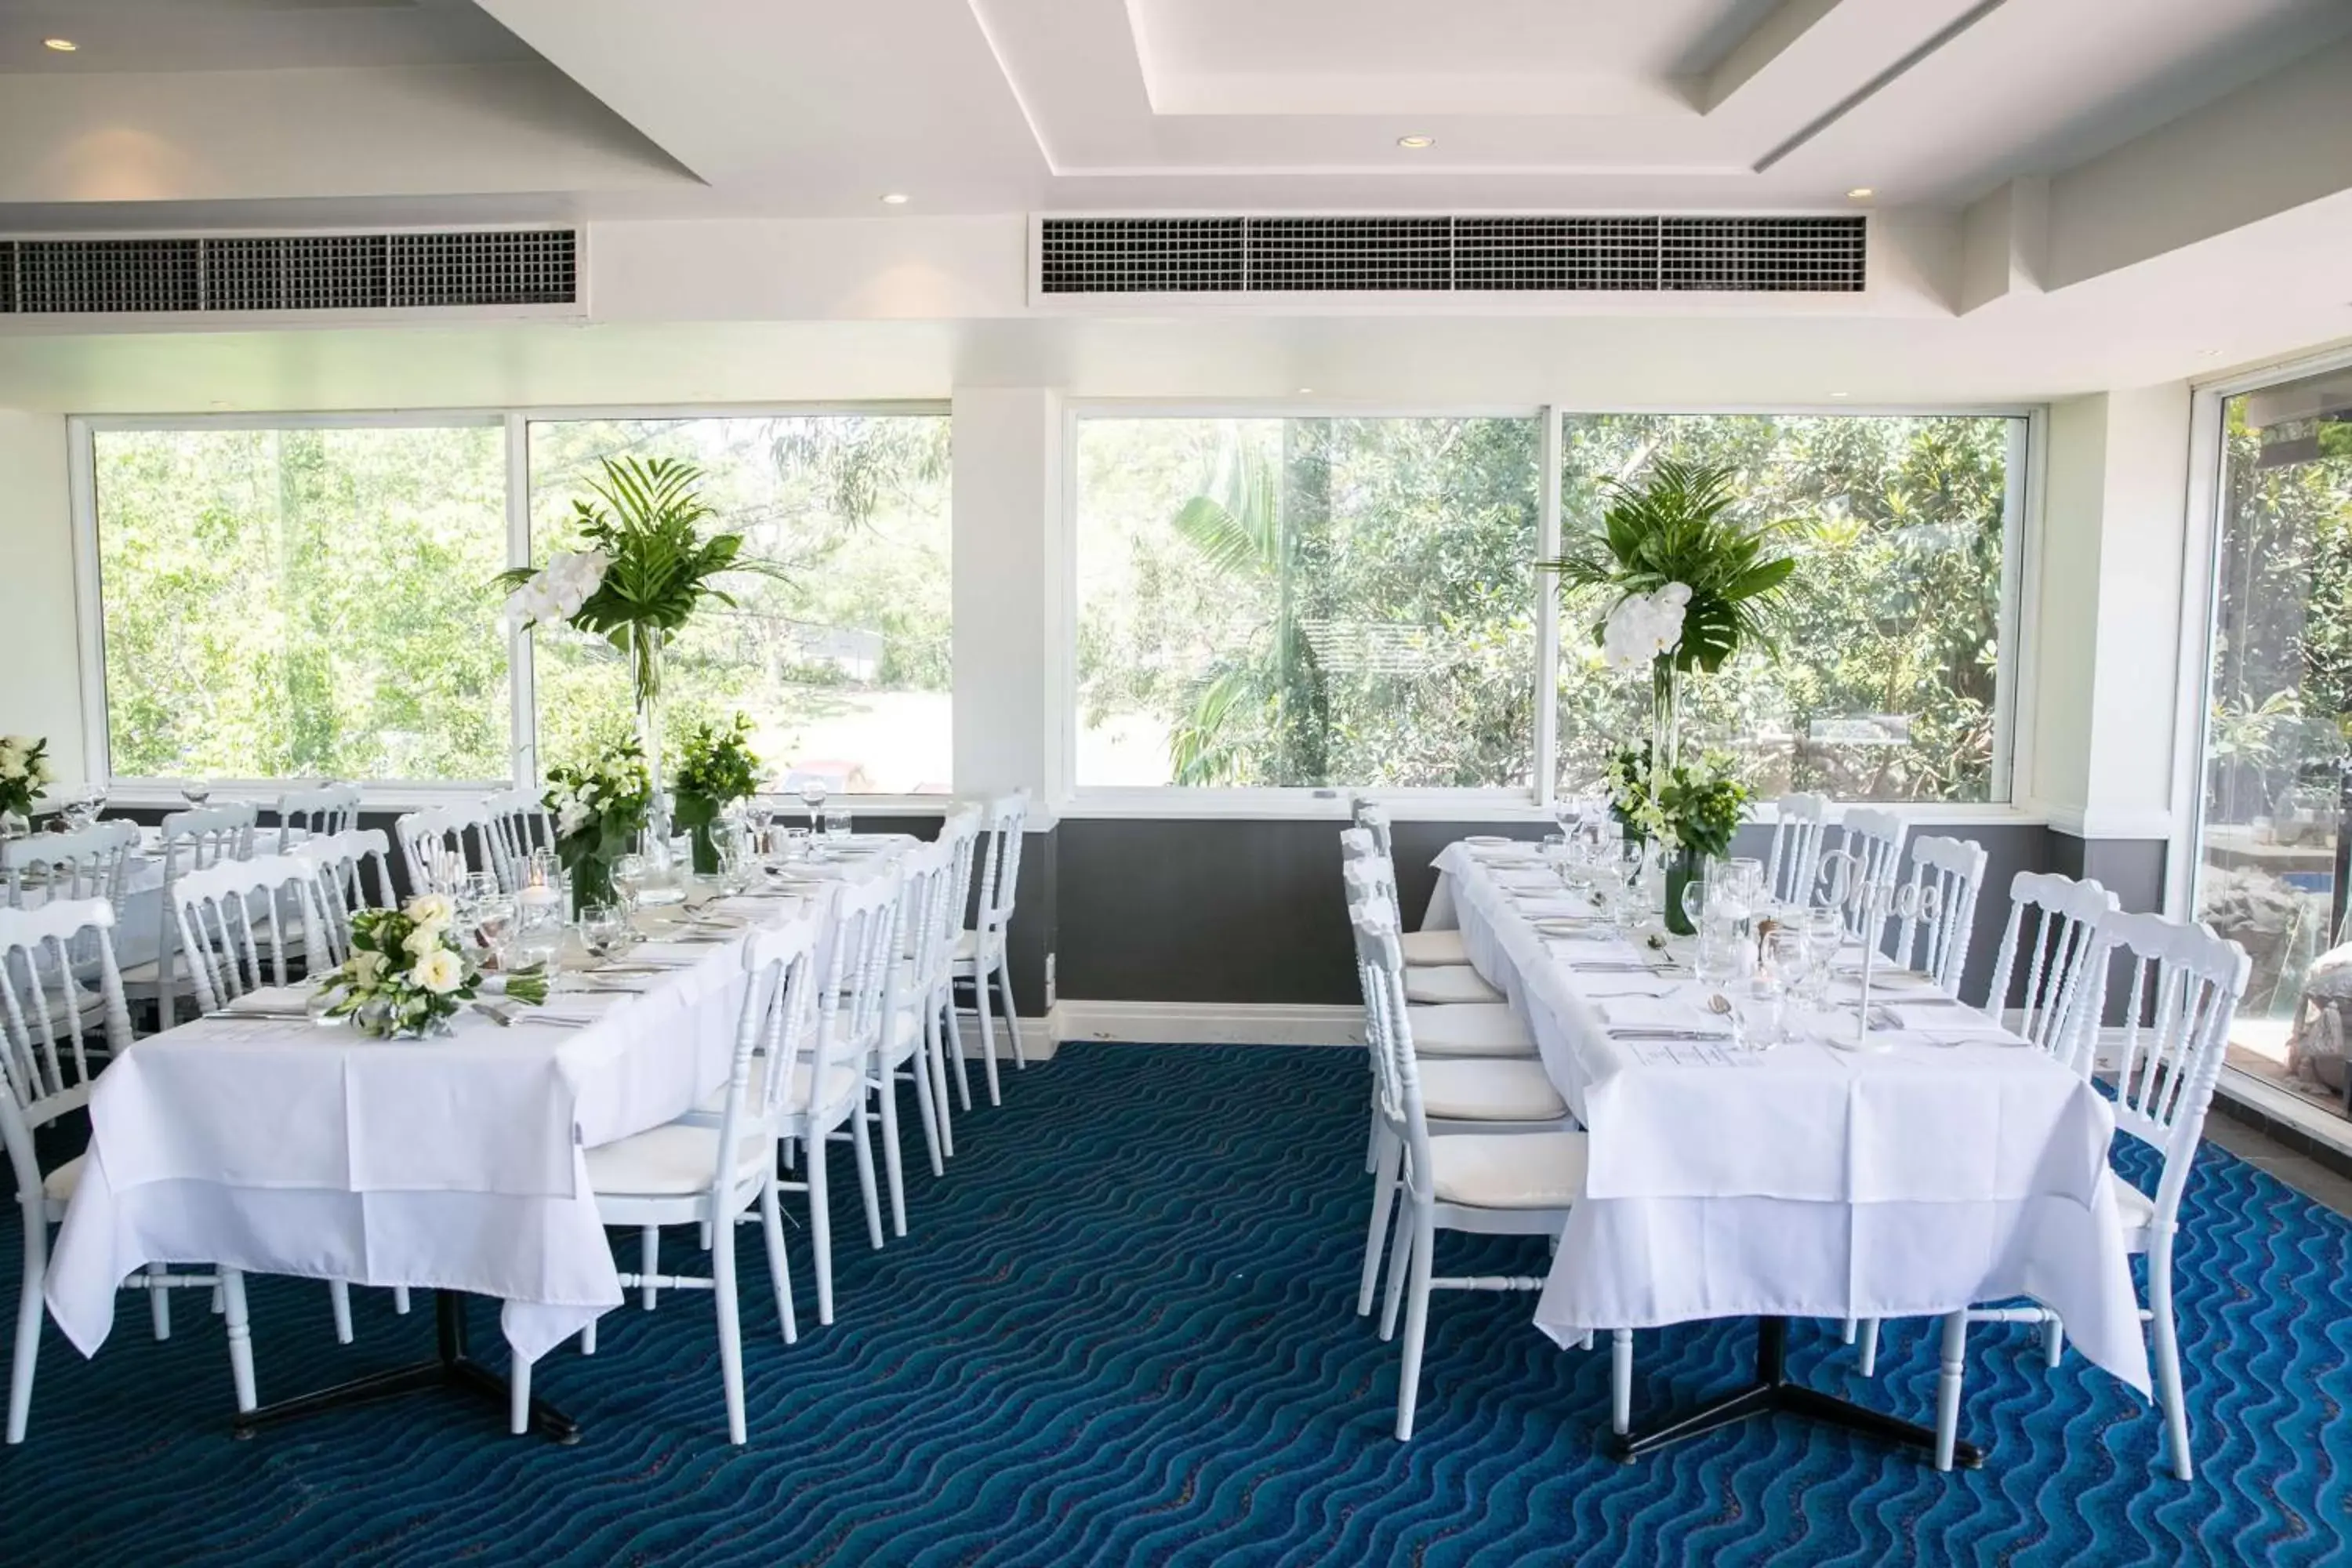 Banquet/Function facilities, Banquet Facilities in Metro Mirage Hotel Newport